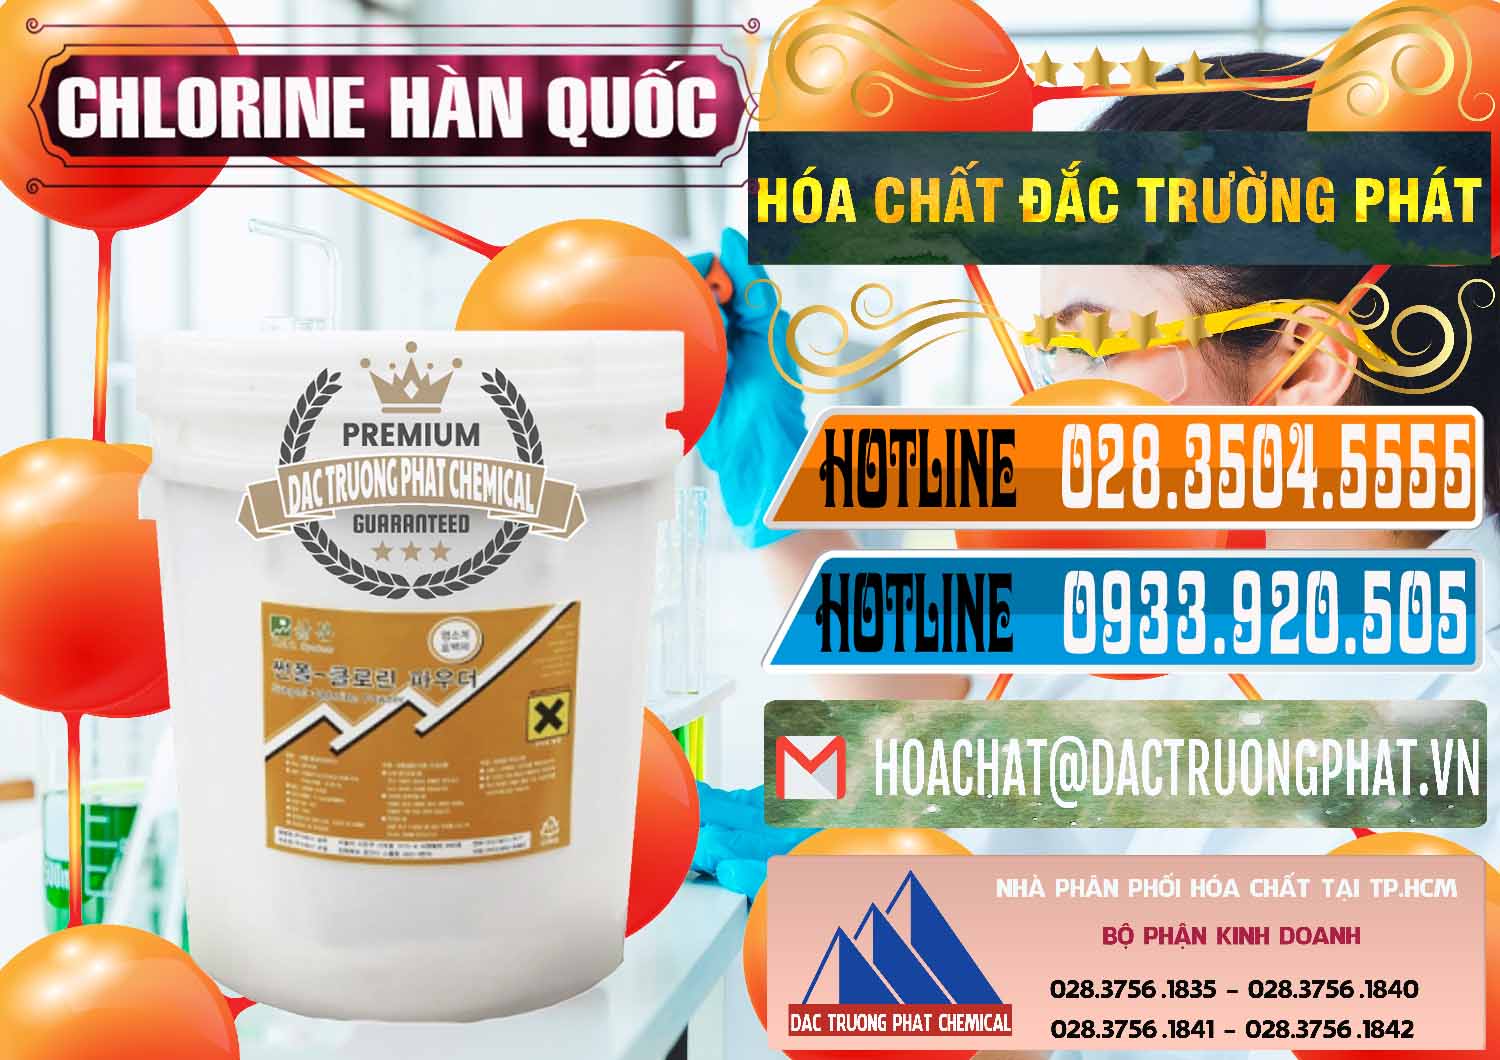 Nơi chuyên nhập khẩu và bán Chlorine – Clorin 70% Hàn Quốc Korea - 0345 - Cung cấp ( phân phối ) hóa chất tại TP.HCM - stmp.net